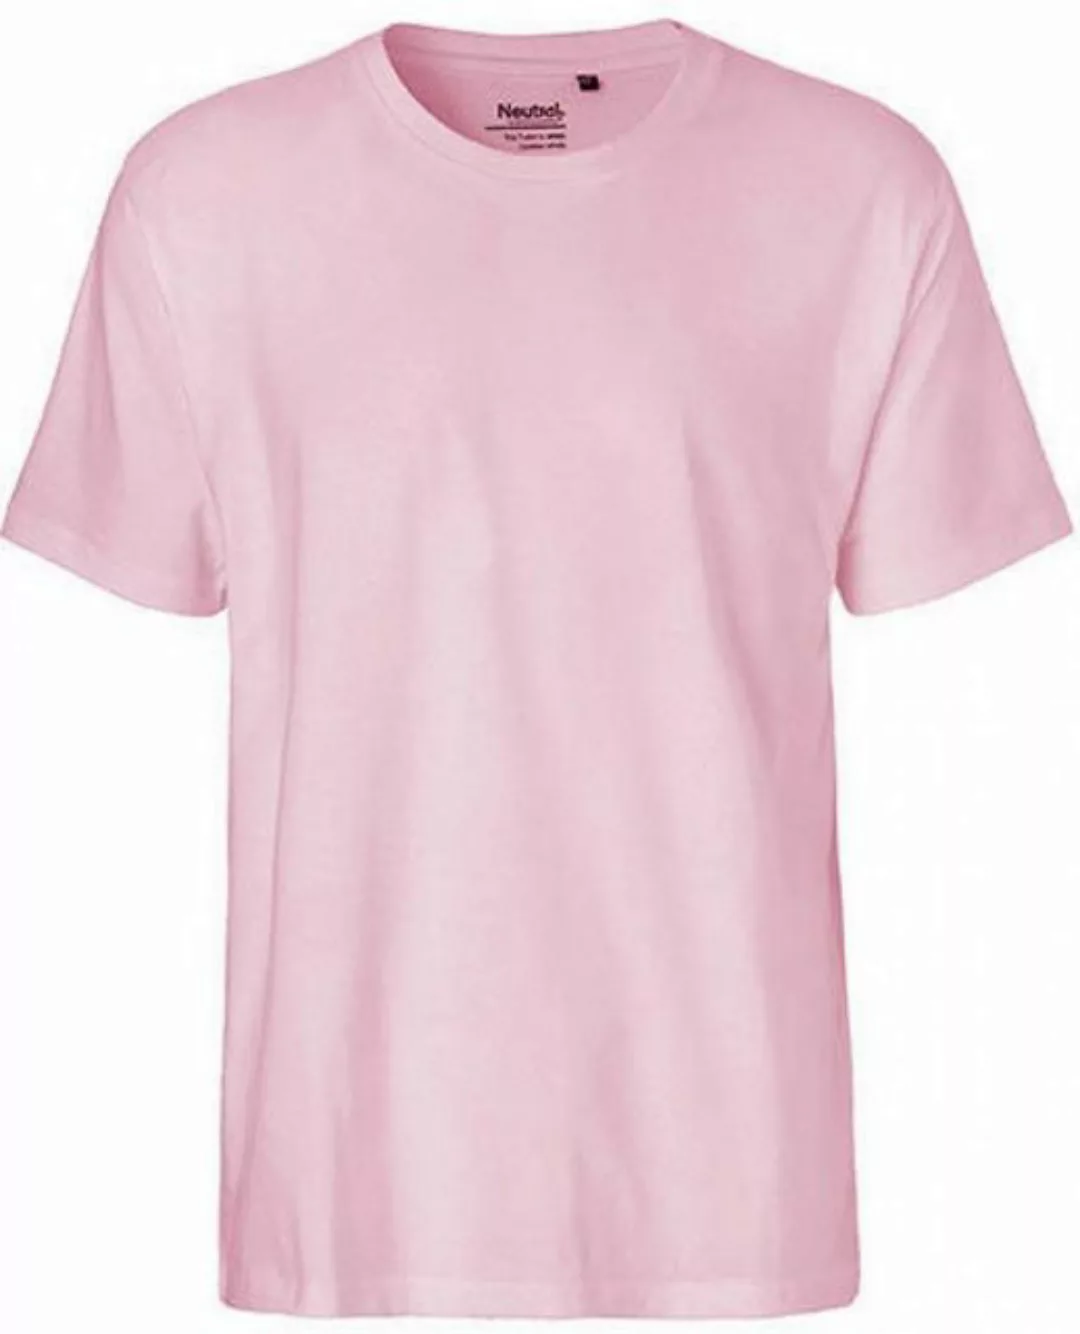 Neutral Rundhalsshirt Herren Classic T-Shirt / 100% Fairtrade Baumwolle günstig online kaufen